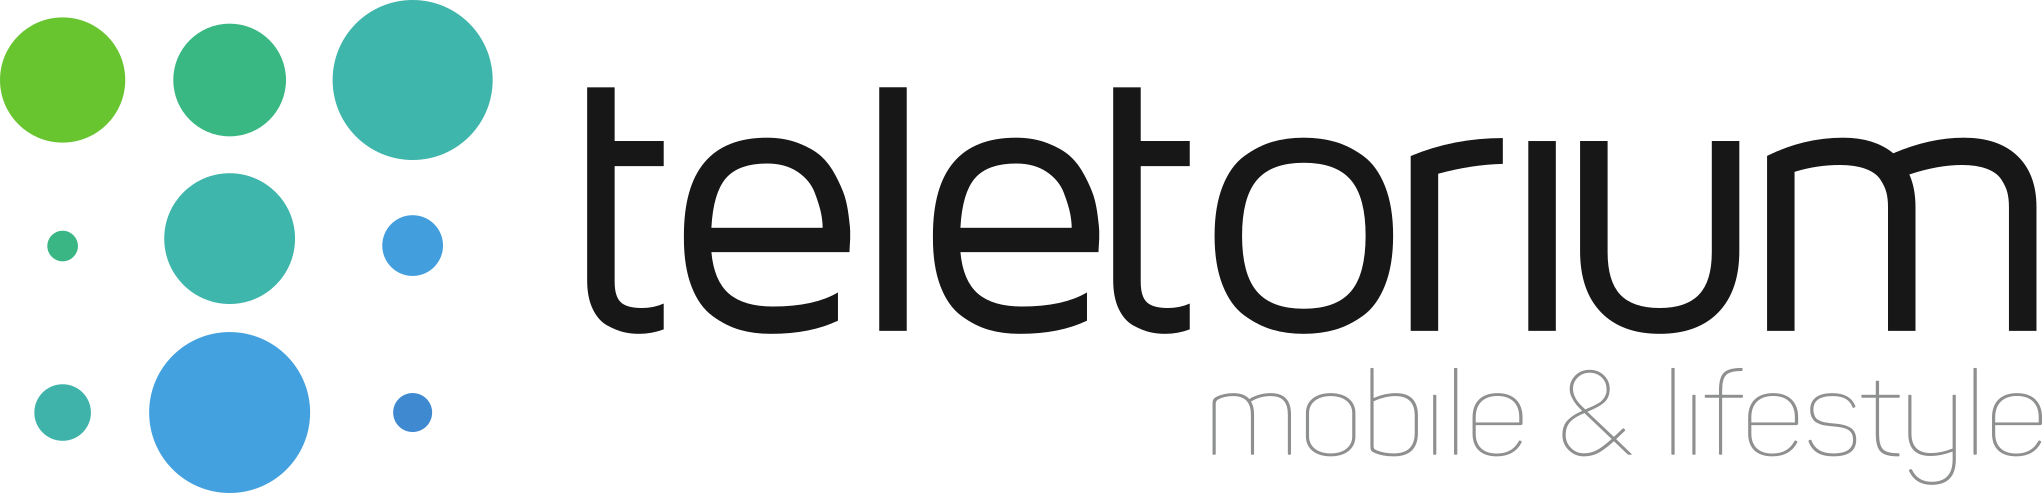 Teletorium - logo